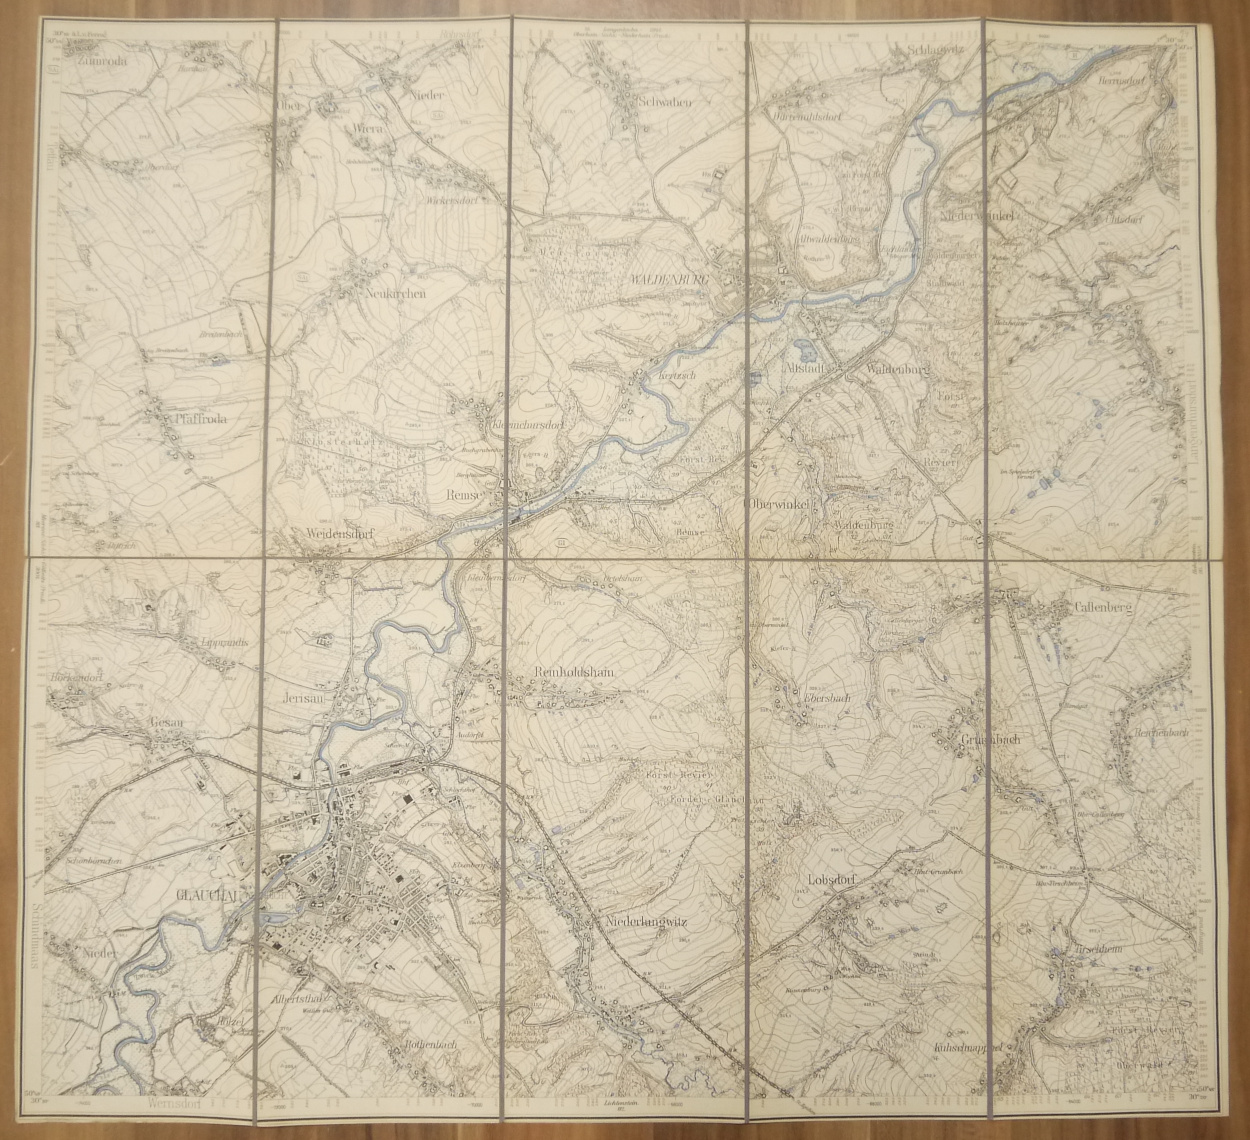 Landkarte Leinen Glauchau (Sächs.) Niederwiera (Preuß.) 1:25000 um 1890 Leinenlandkarte